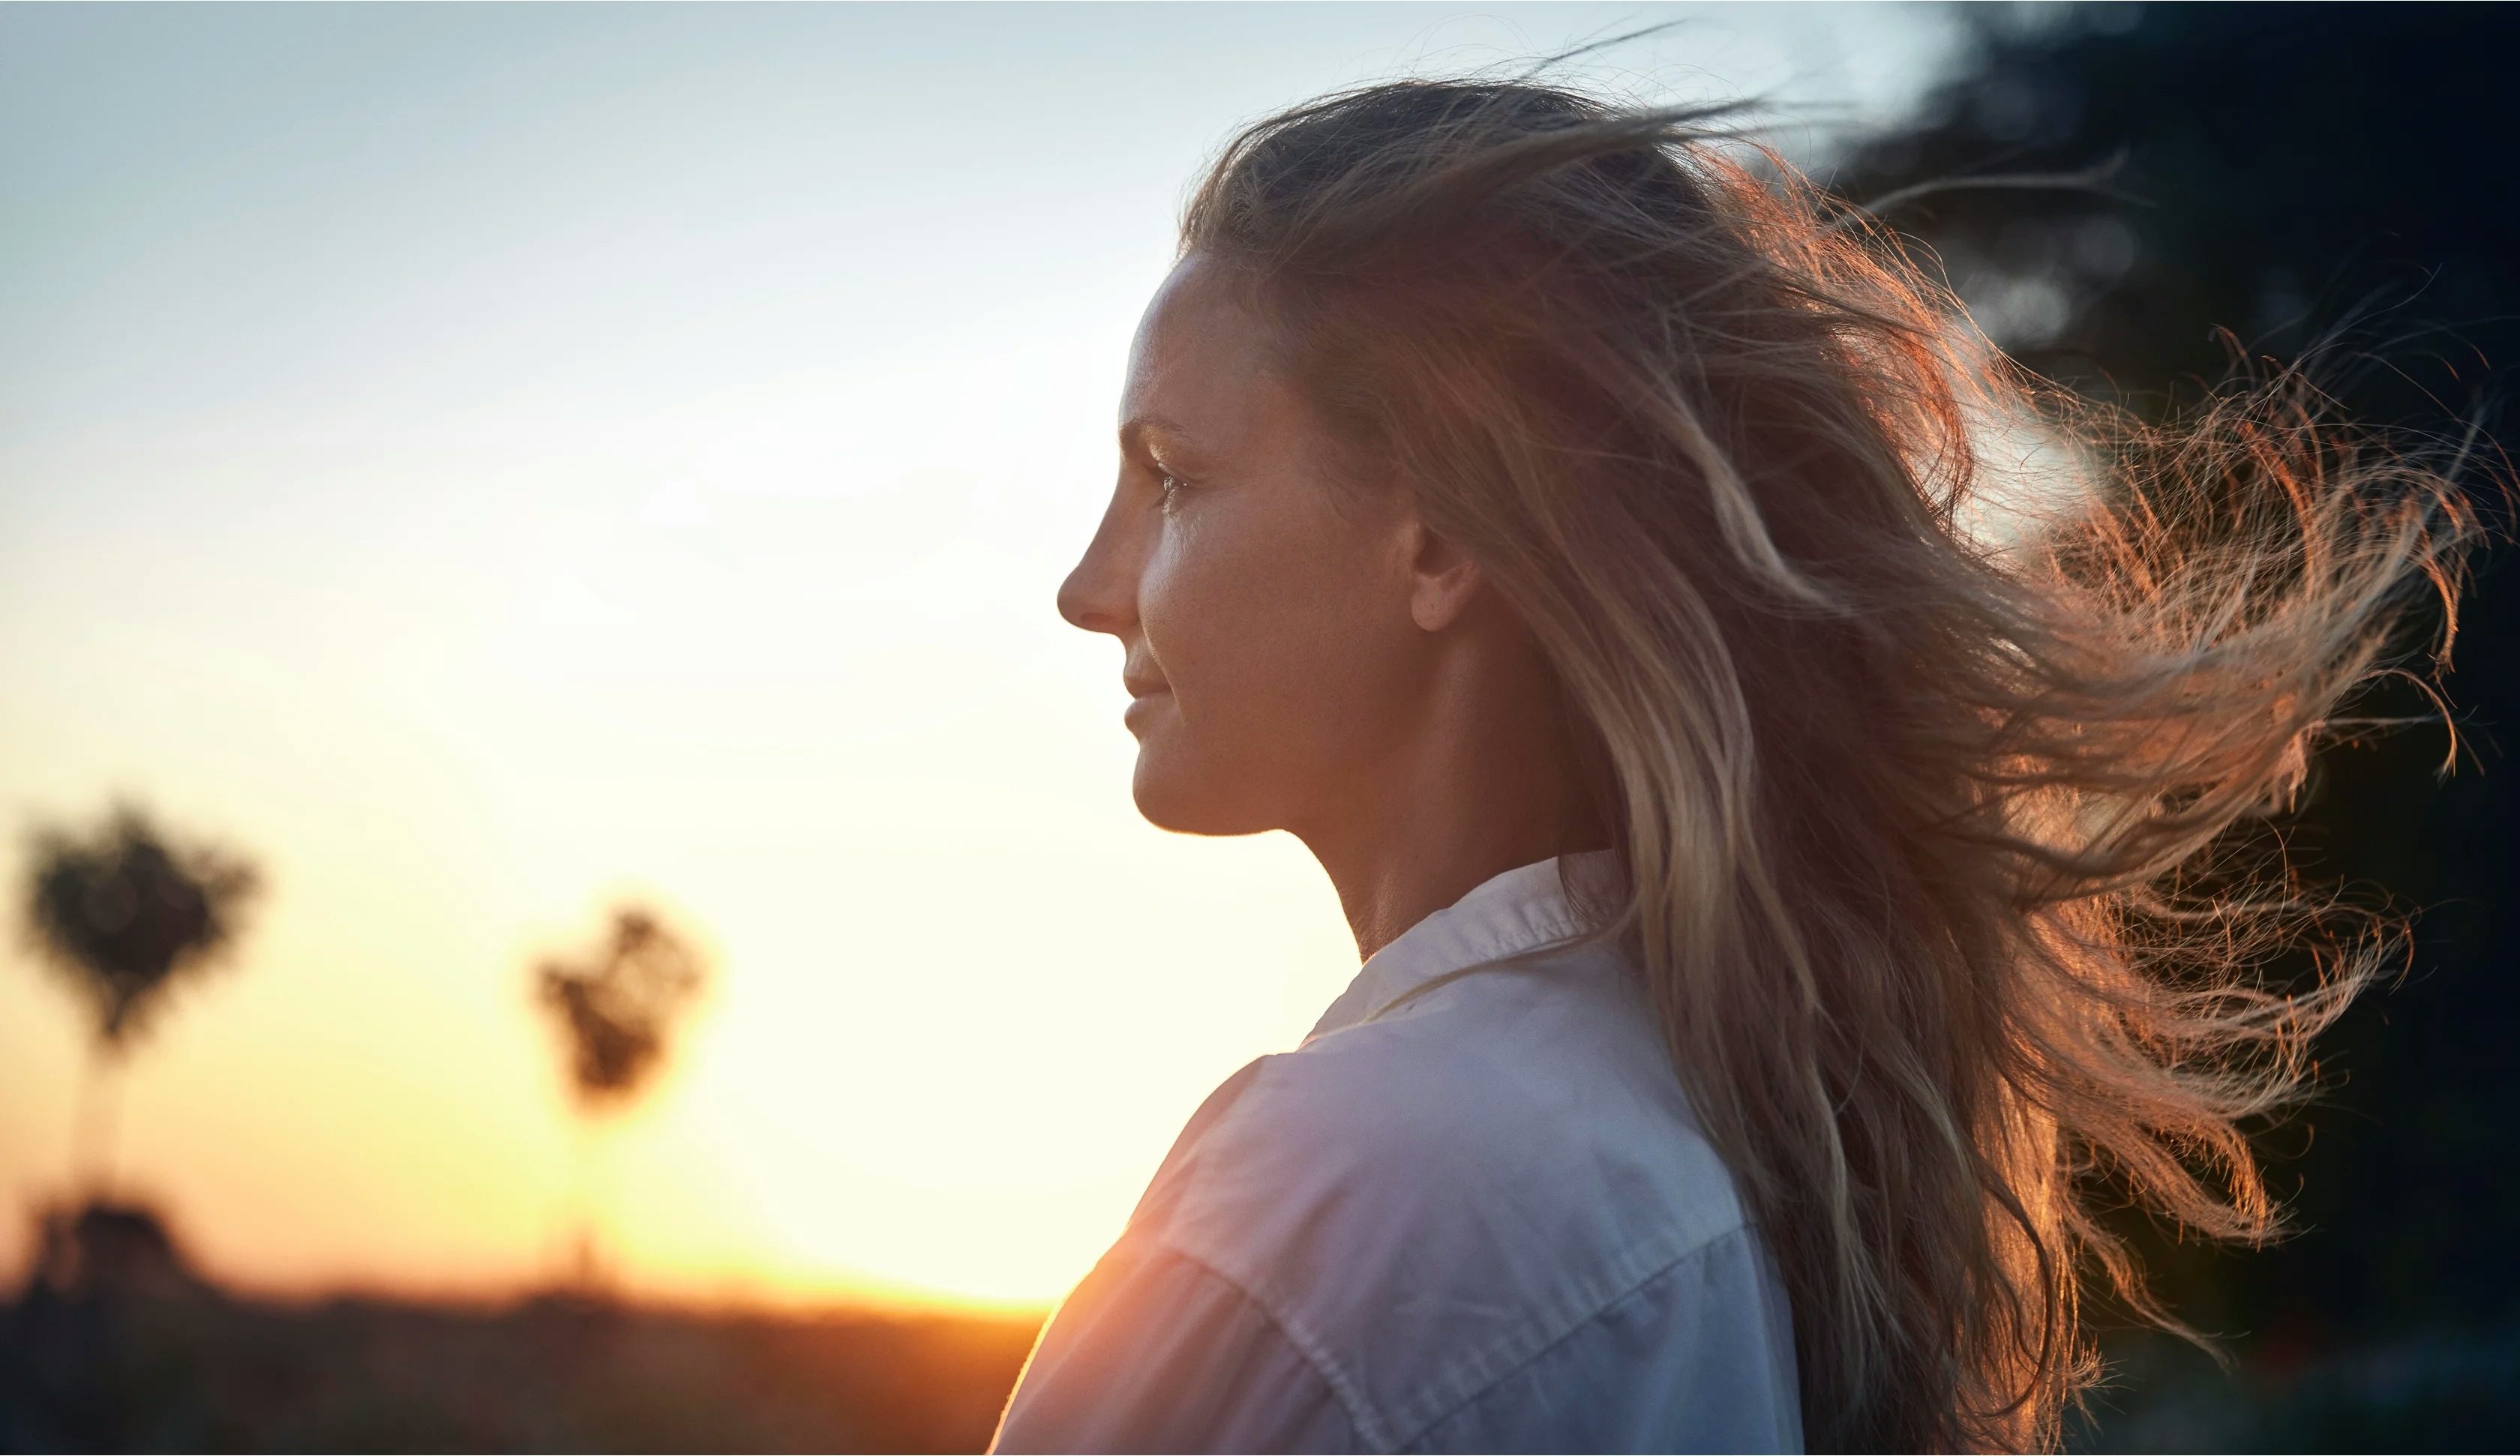 Långt blåndt hår som blåser av vinden mot en solnedgång som bakgrund - Husqvarna - NyStudio